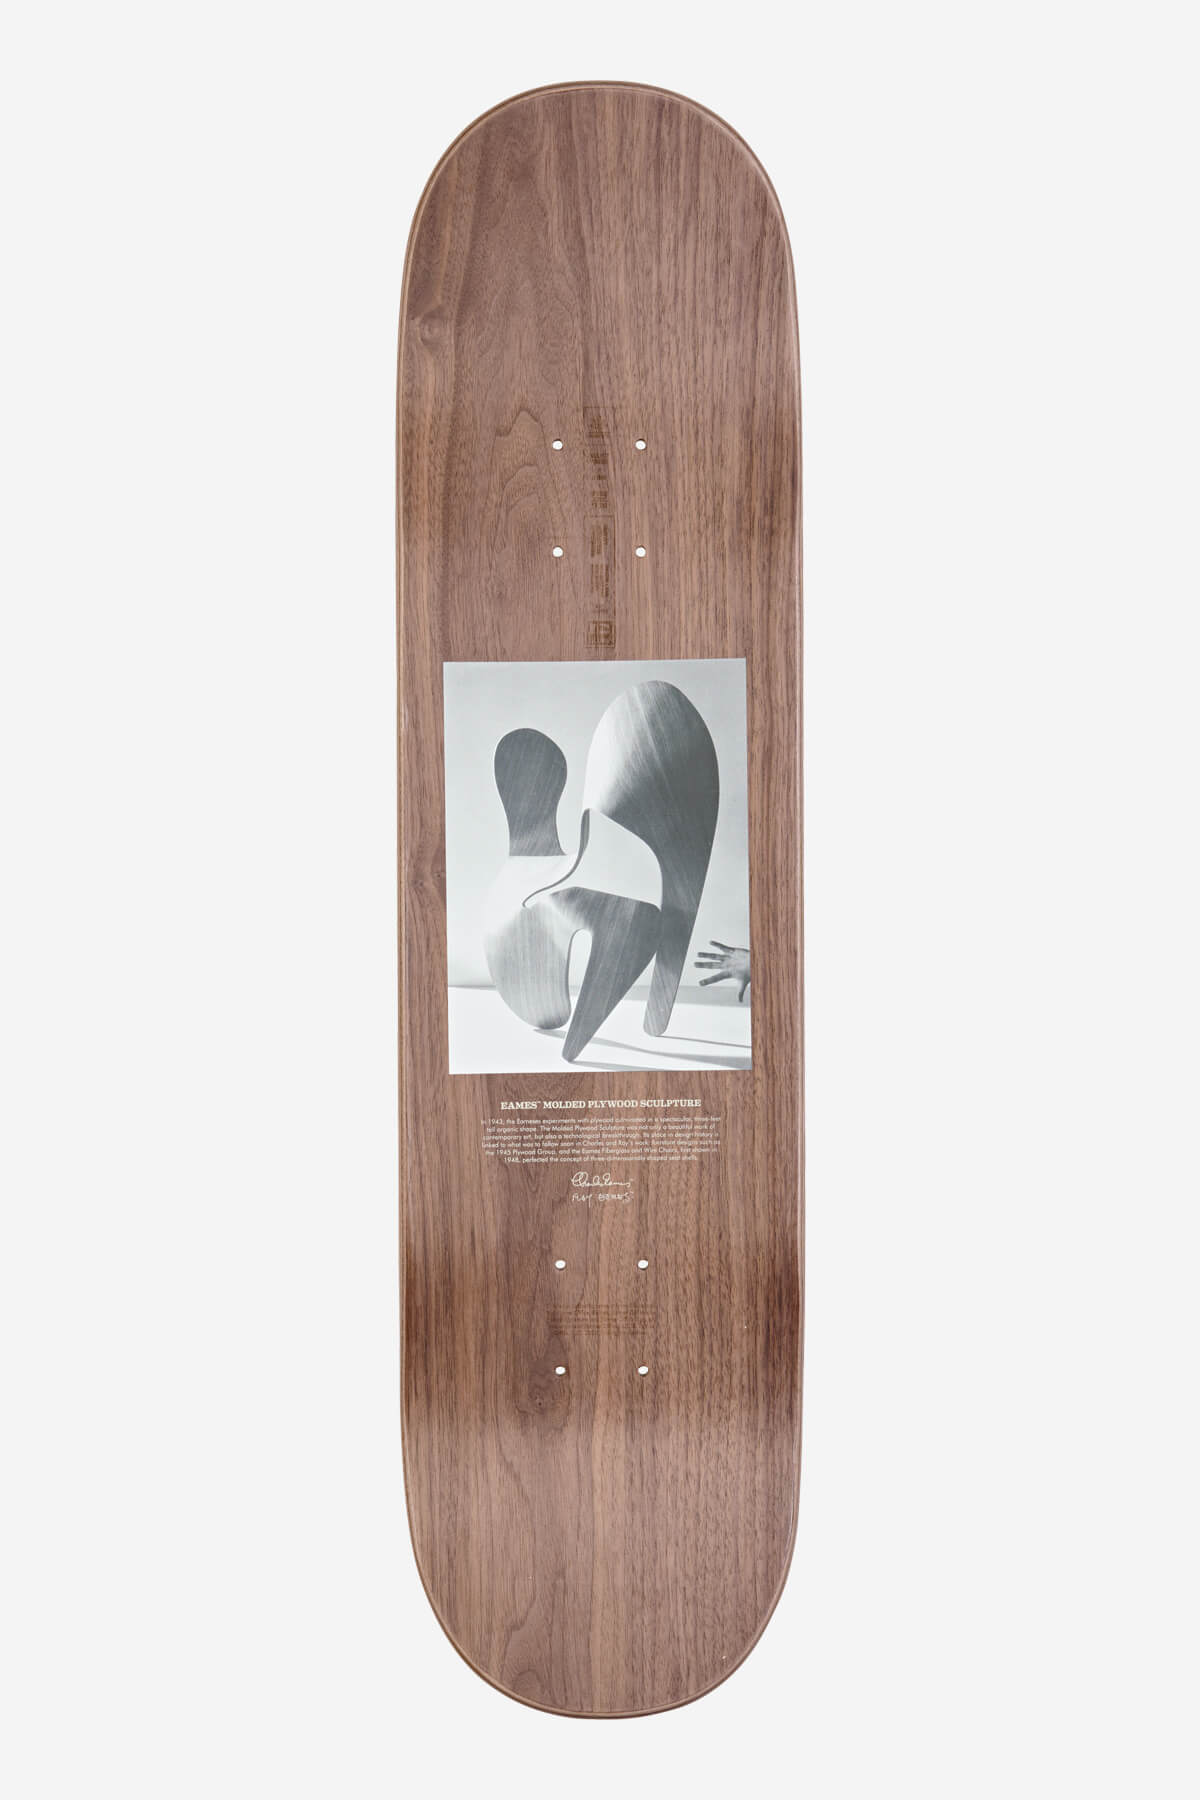 Globe - Eames Scherenschnitt - Plywood Sculpture - 8.0" Skateboard Deck